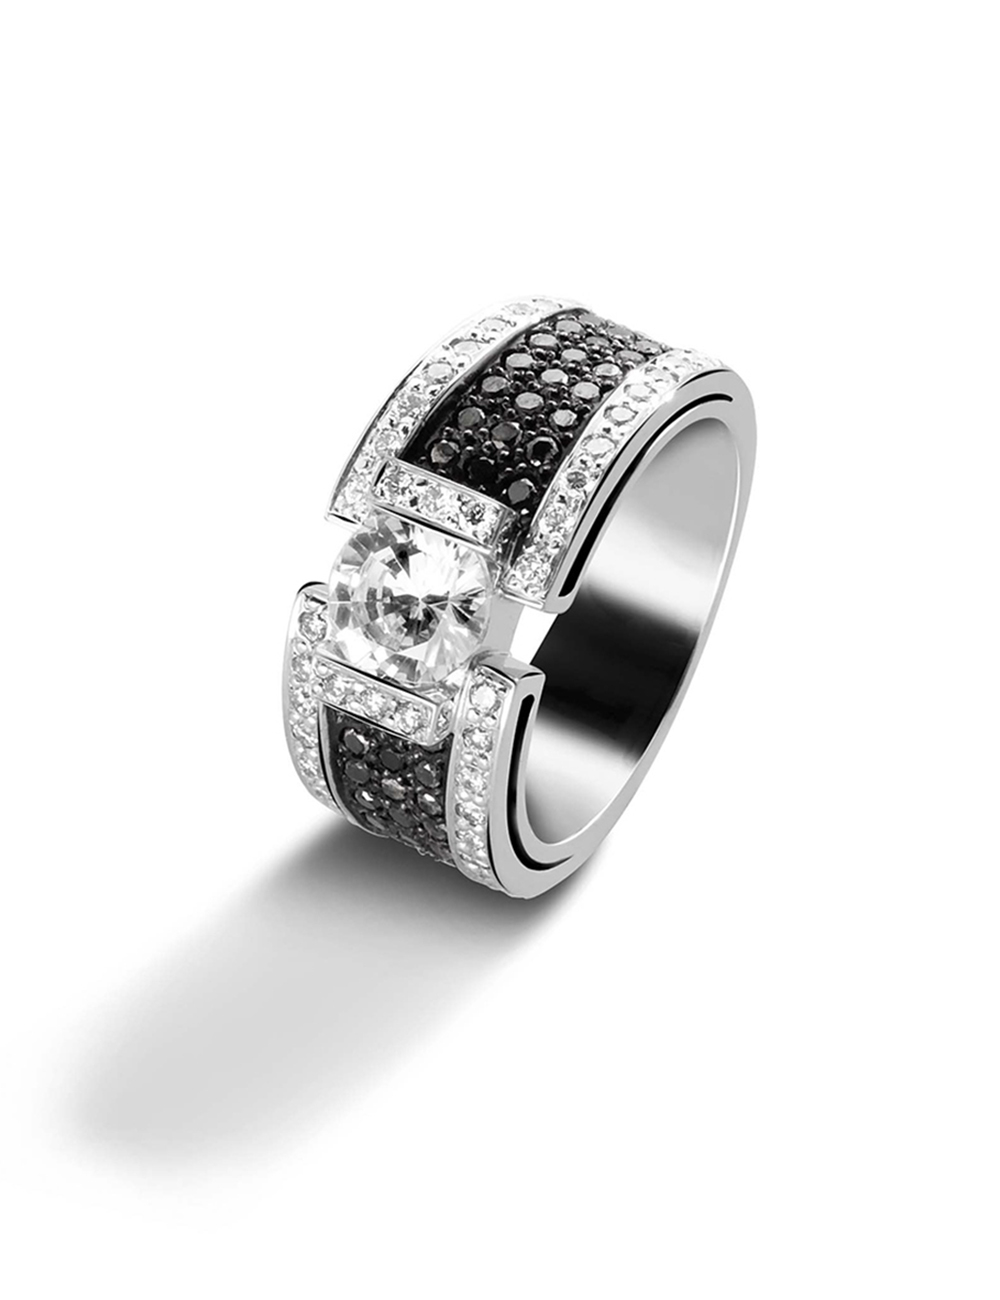 Bague femme luxe aux lignes modernes, diamant blanc 1 carat, pavage diamants blancs/noirs, un bijou à offrir.